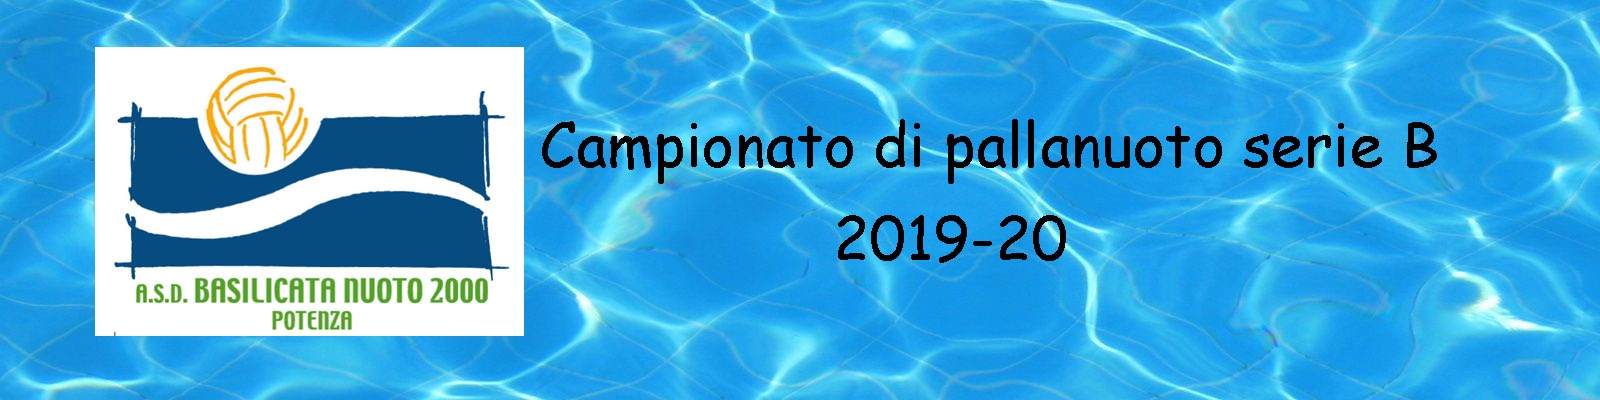 Basilicata Nuoto 2000 anno 2020